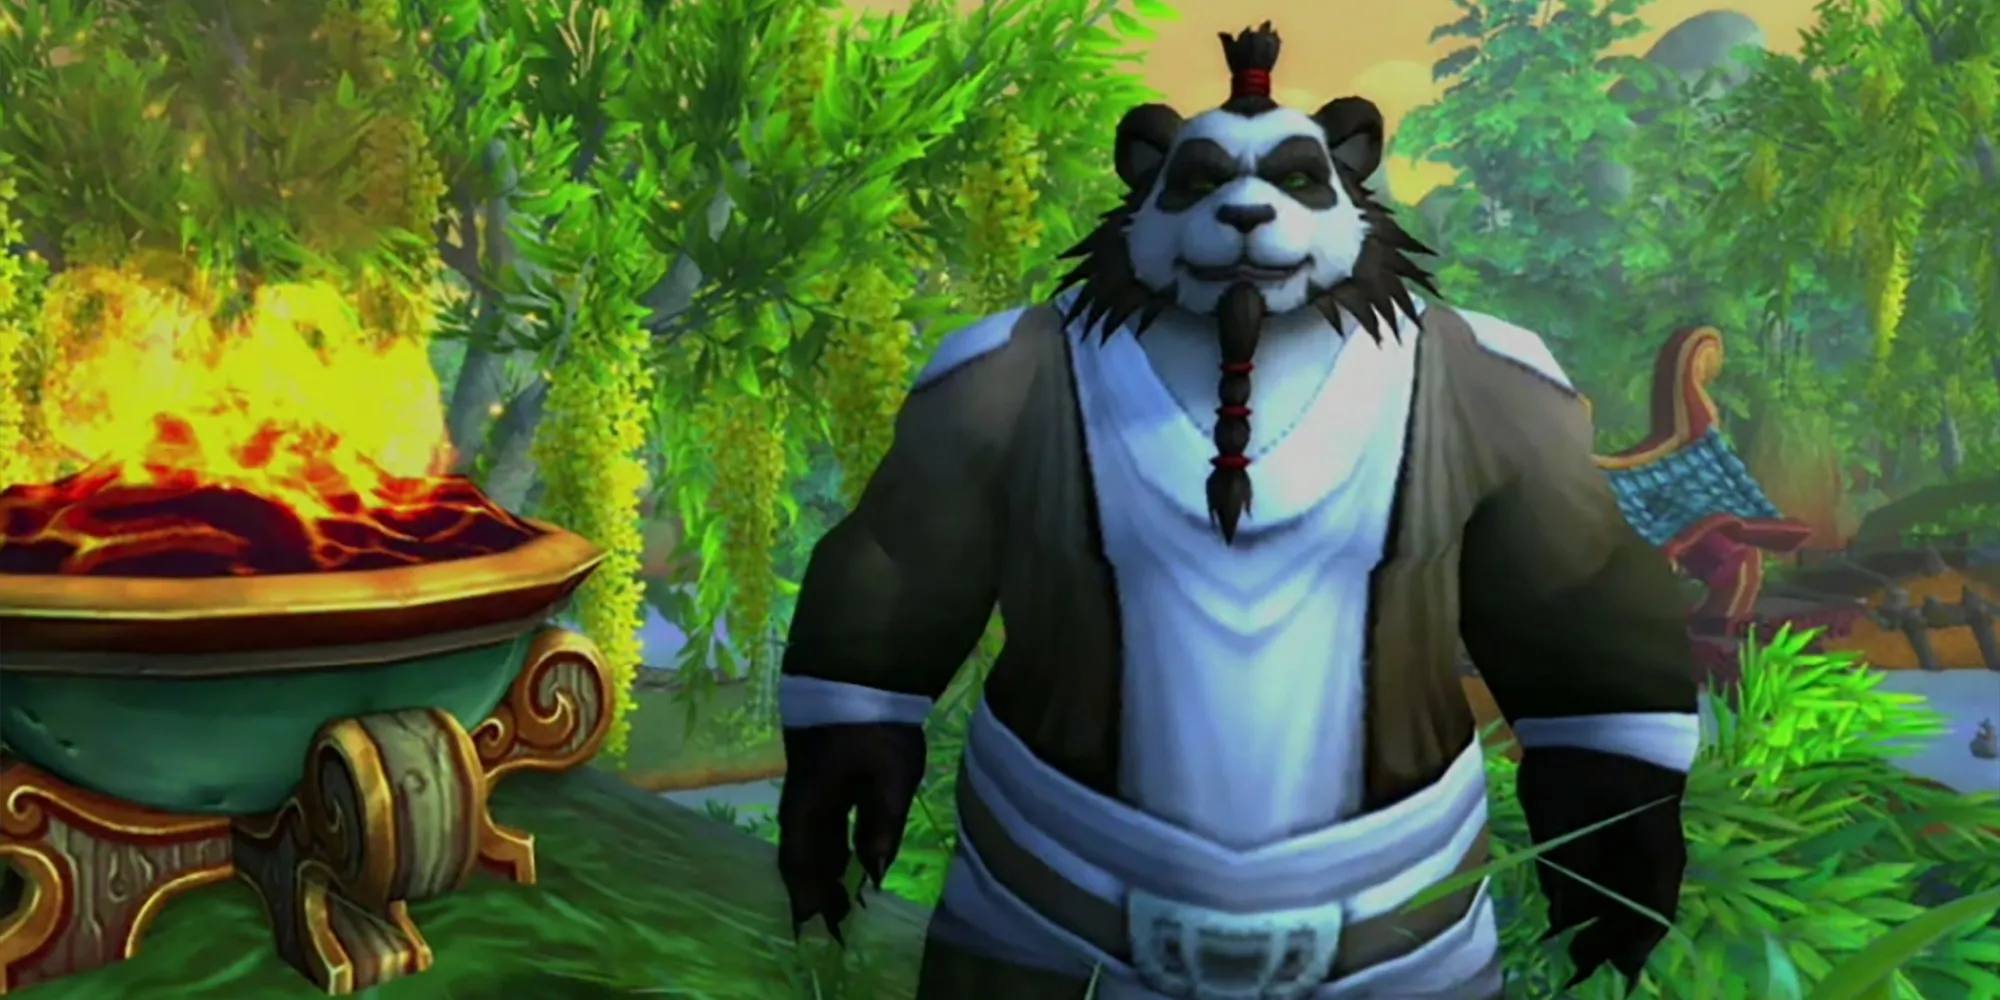 World of Warcraft Sacerdote Pandaren